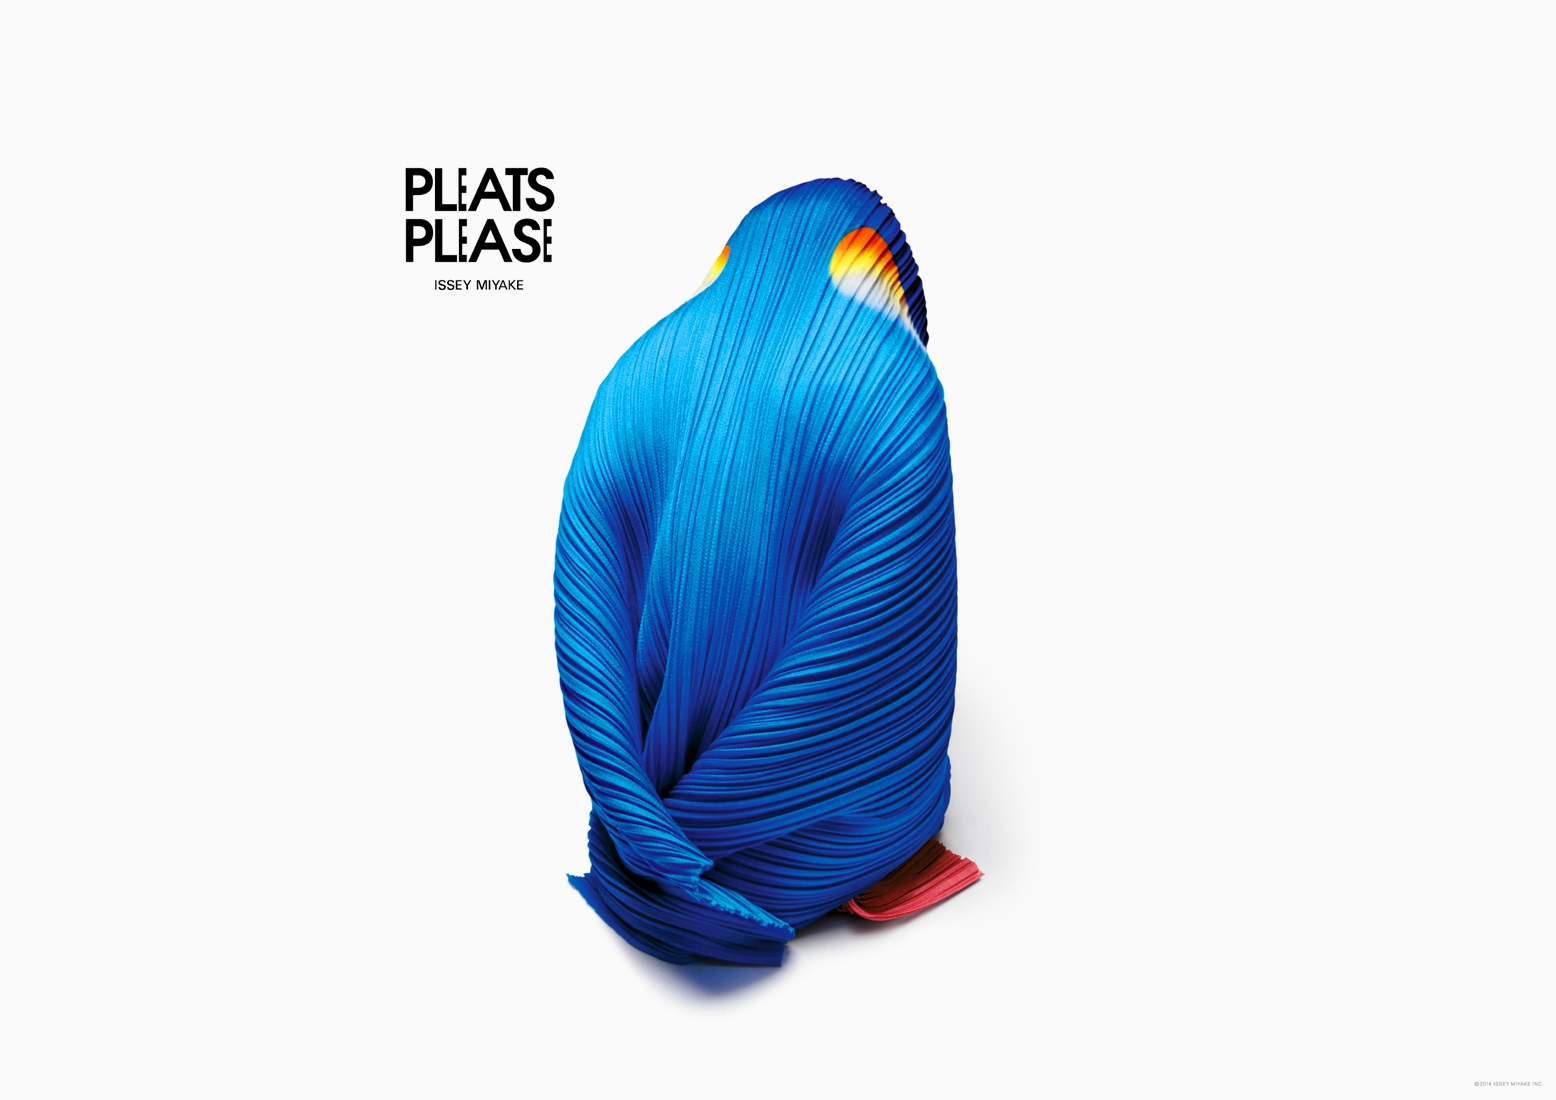 pleats-please-animals-2015-07